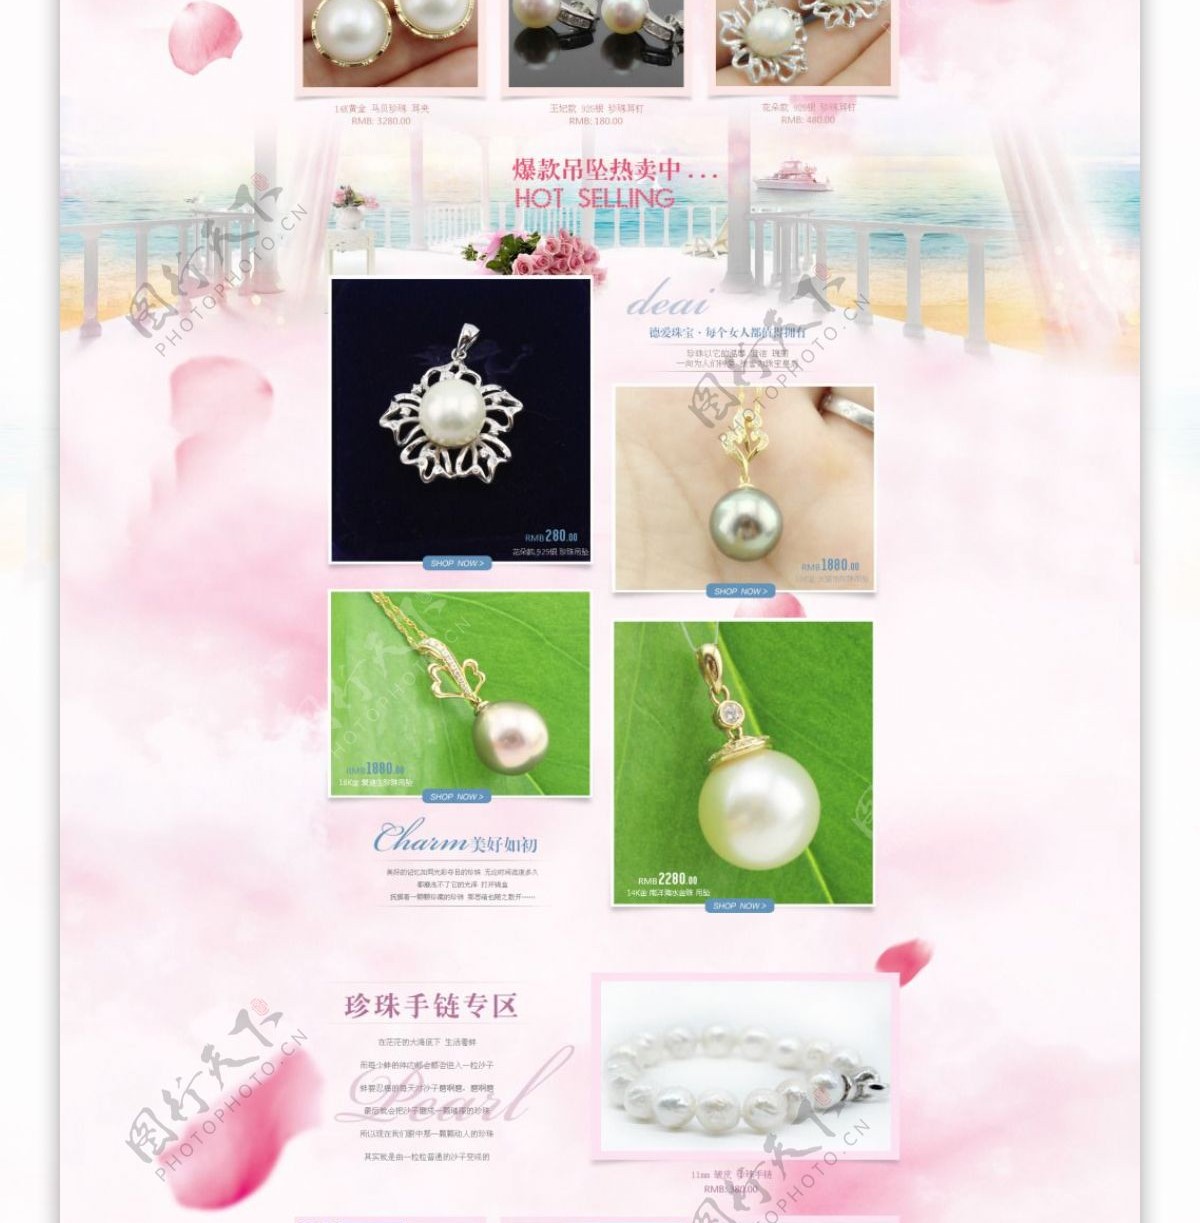 三八妇女节购物狂欢珍珠首饰首页设计